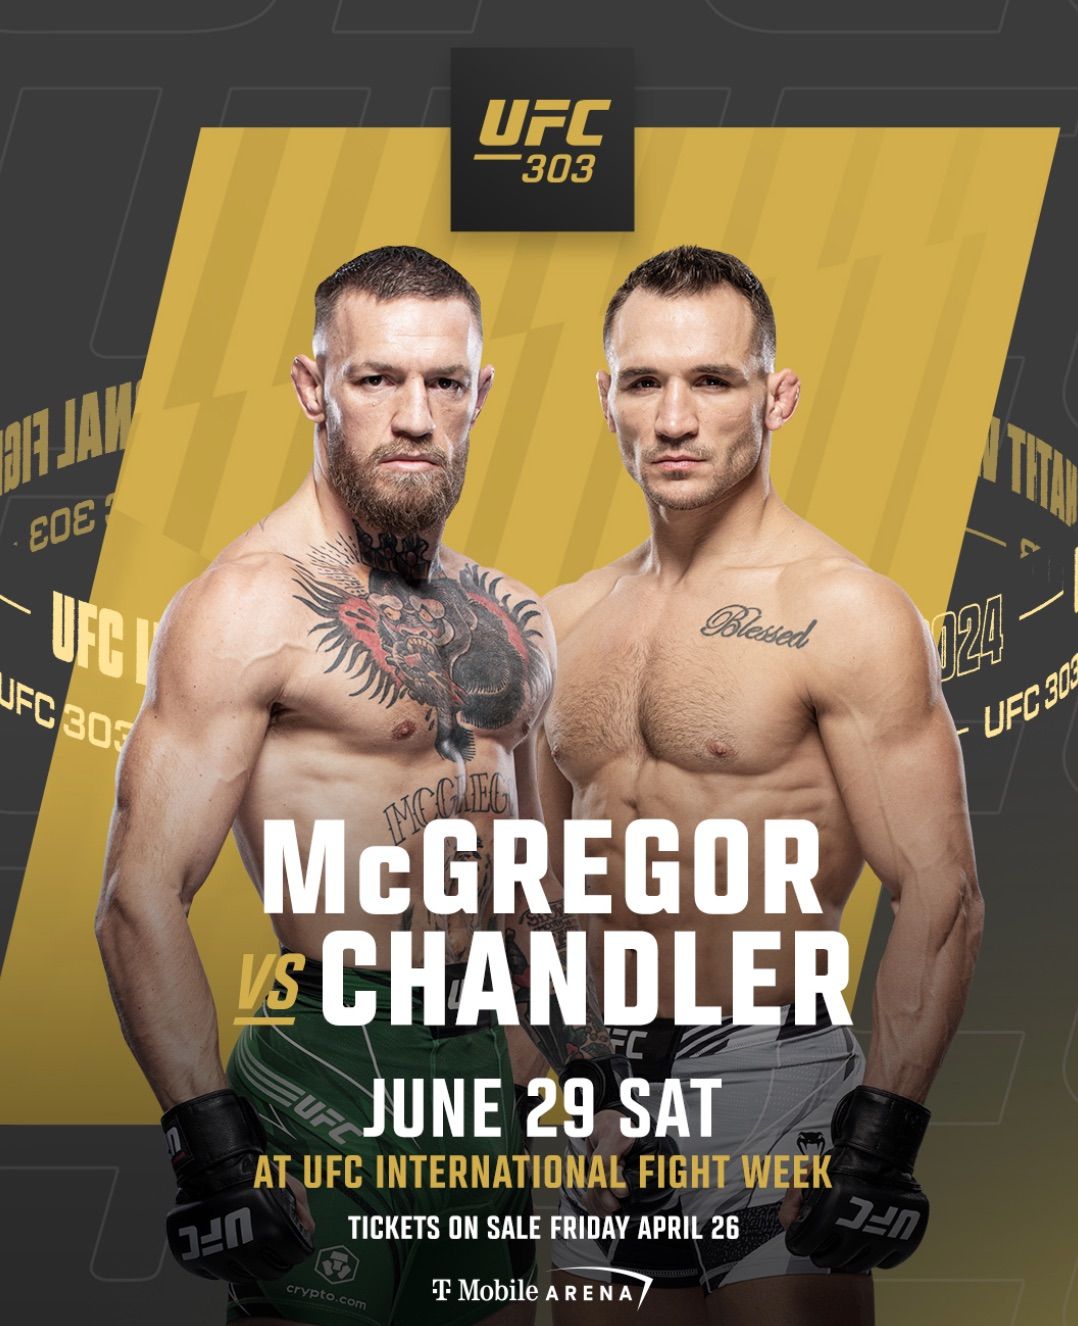 UFC: McGregor vs Chandler